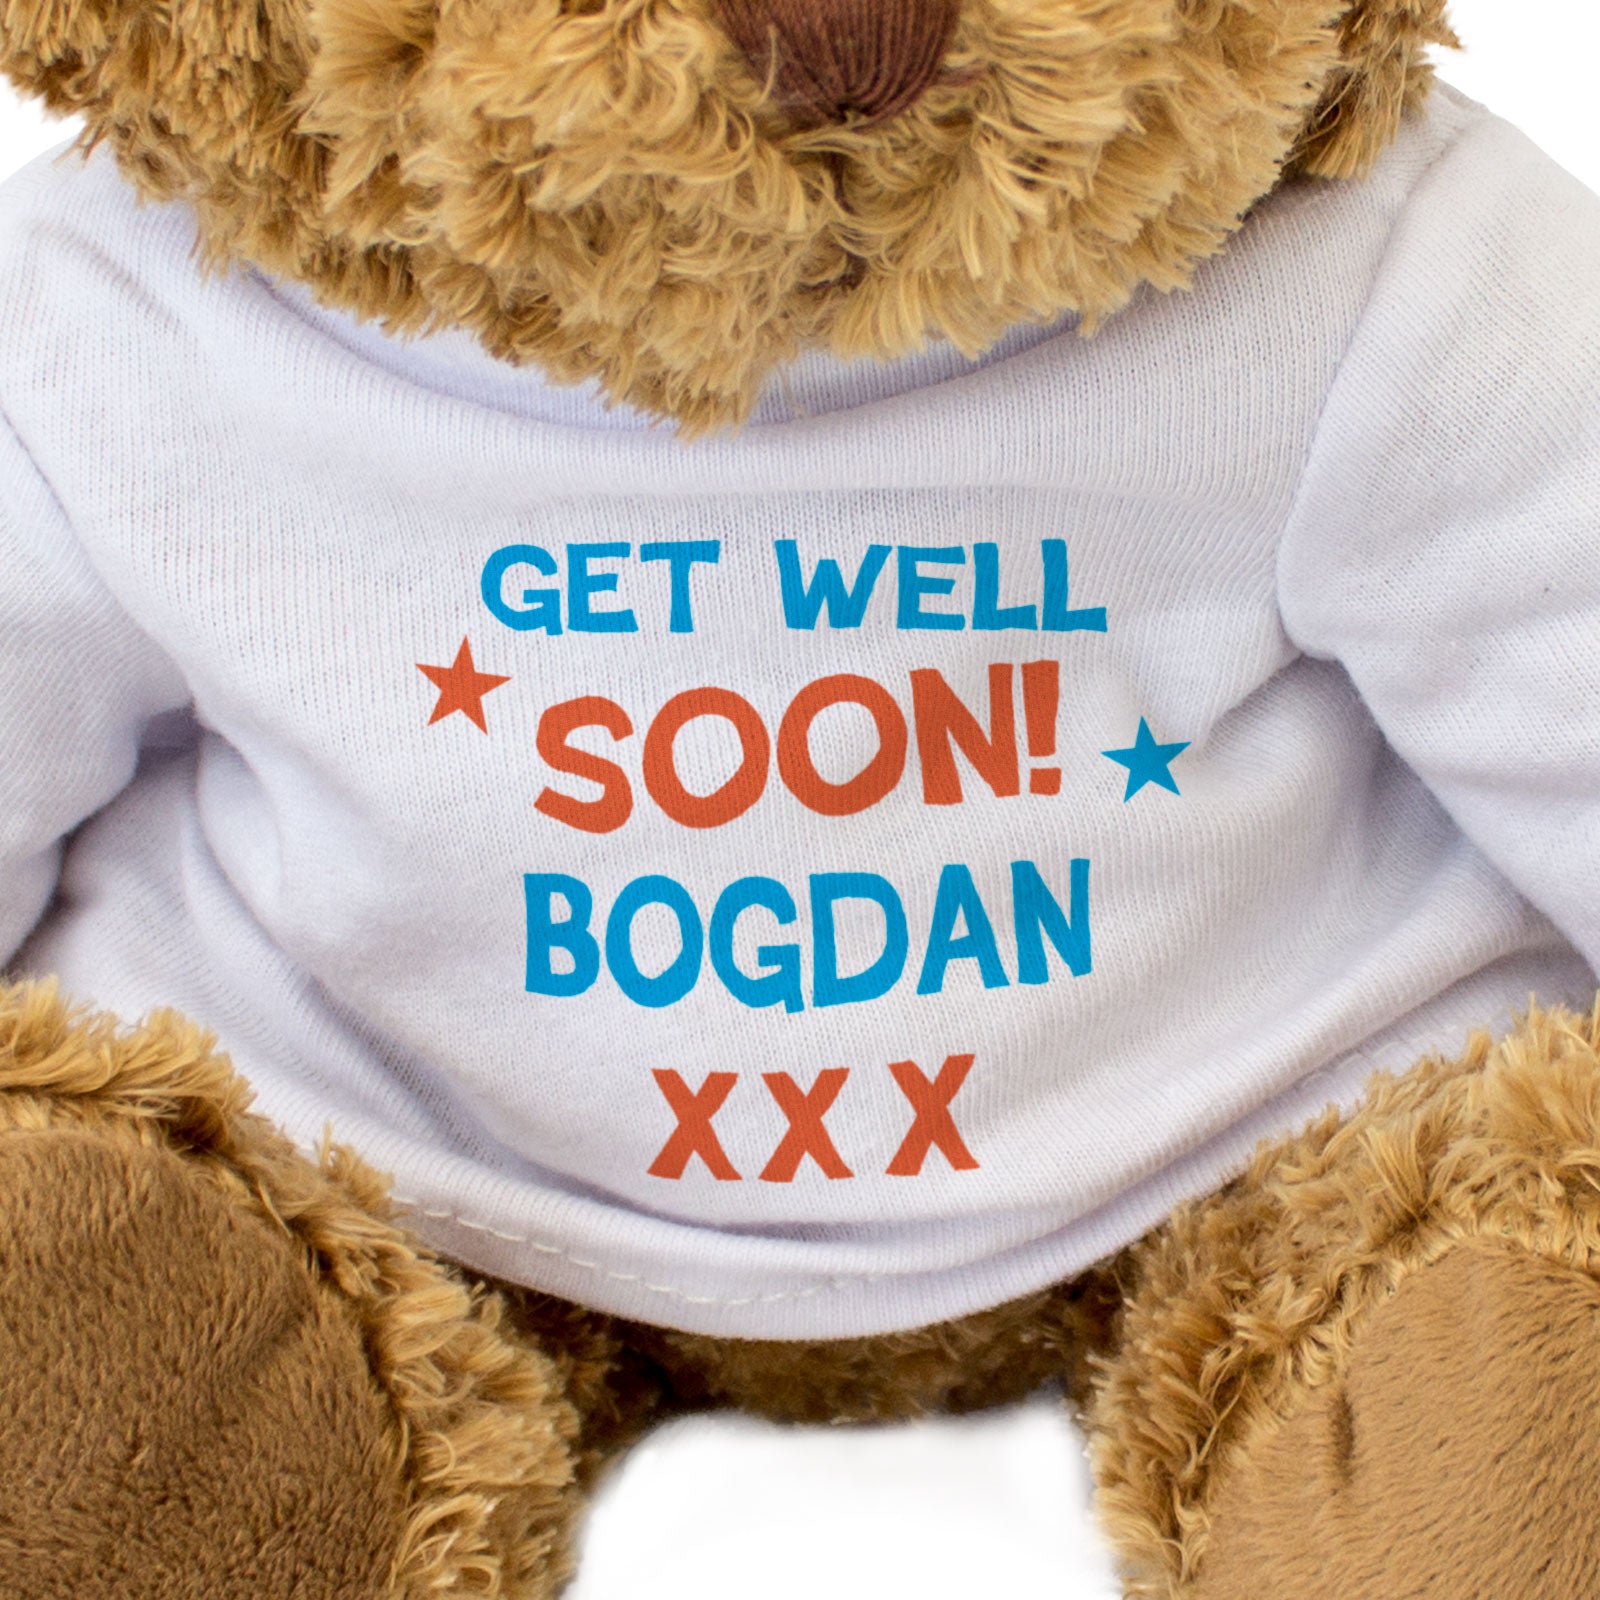 Get Well Soon Bogdan - Teddy Bear